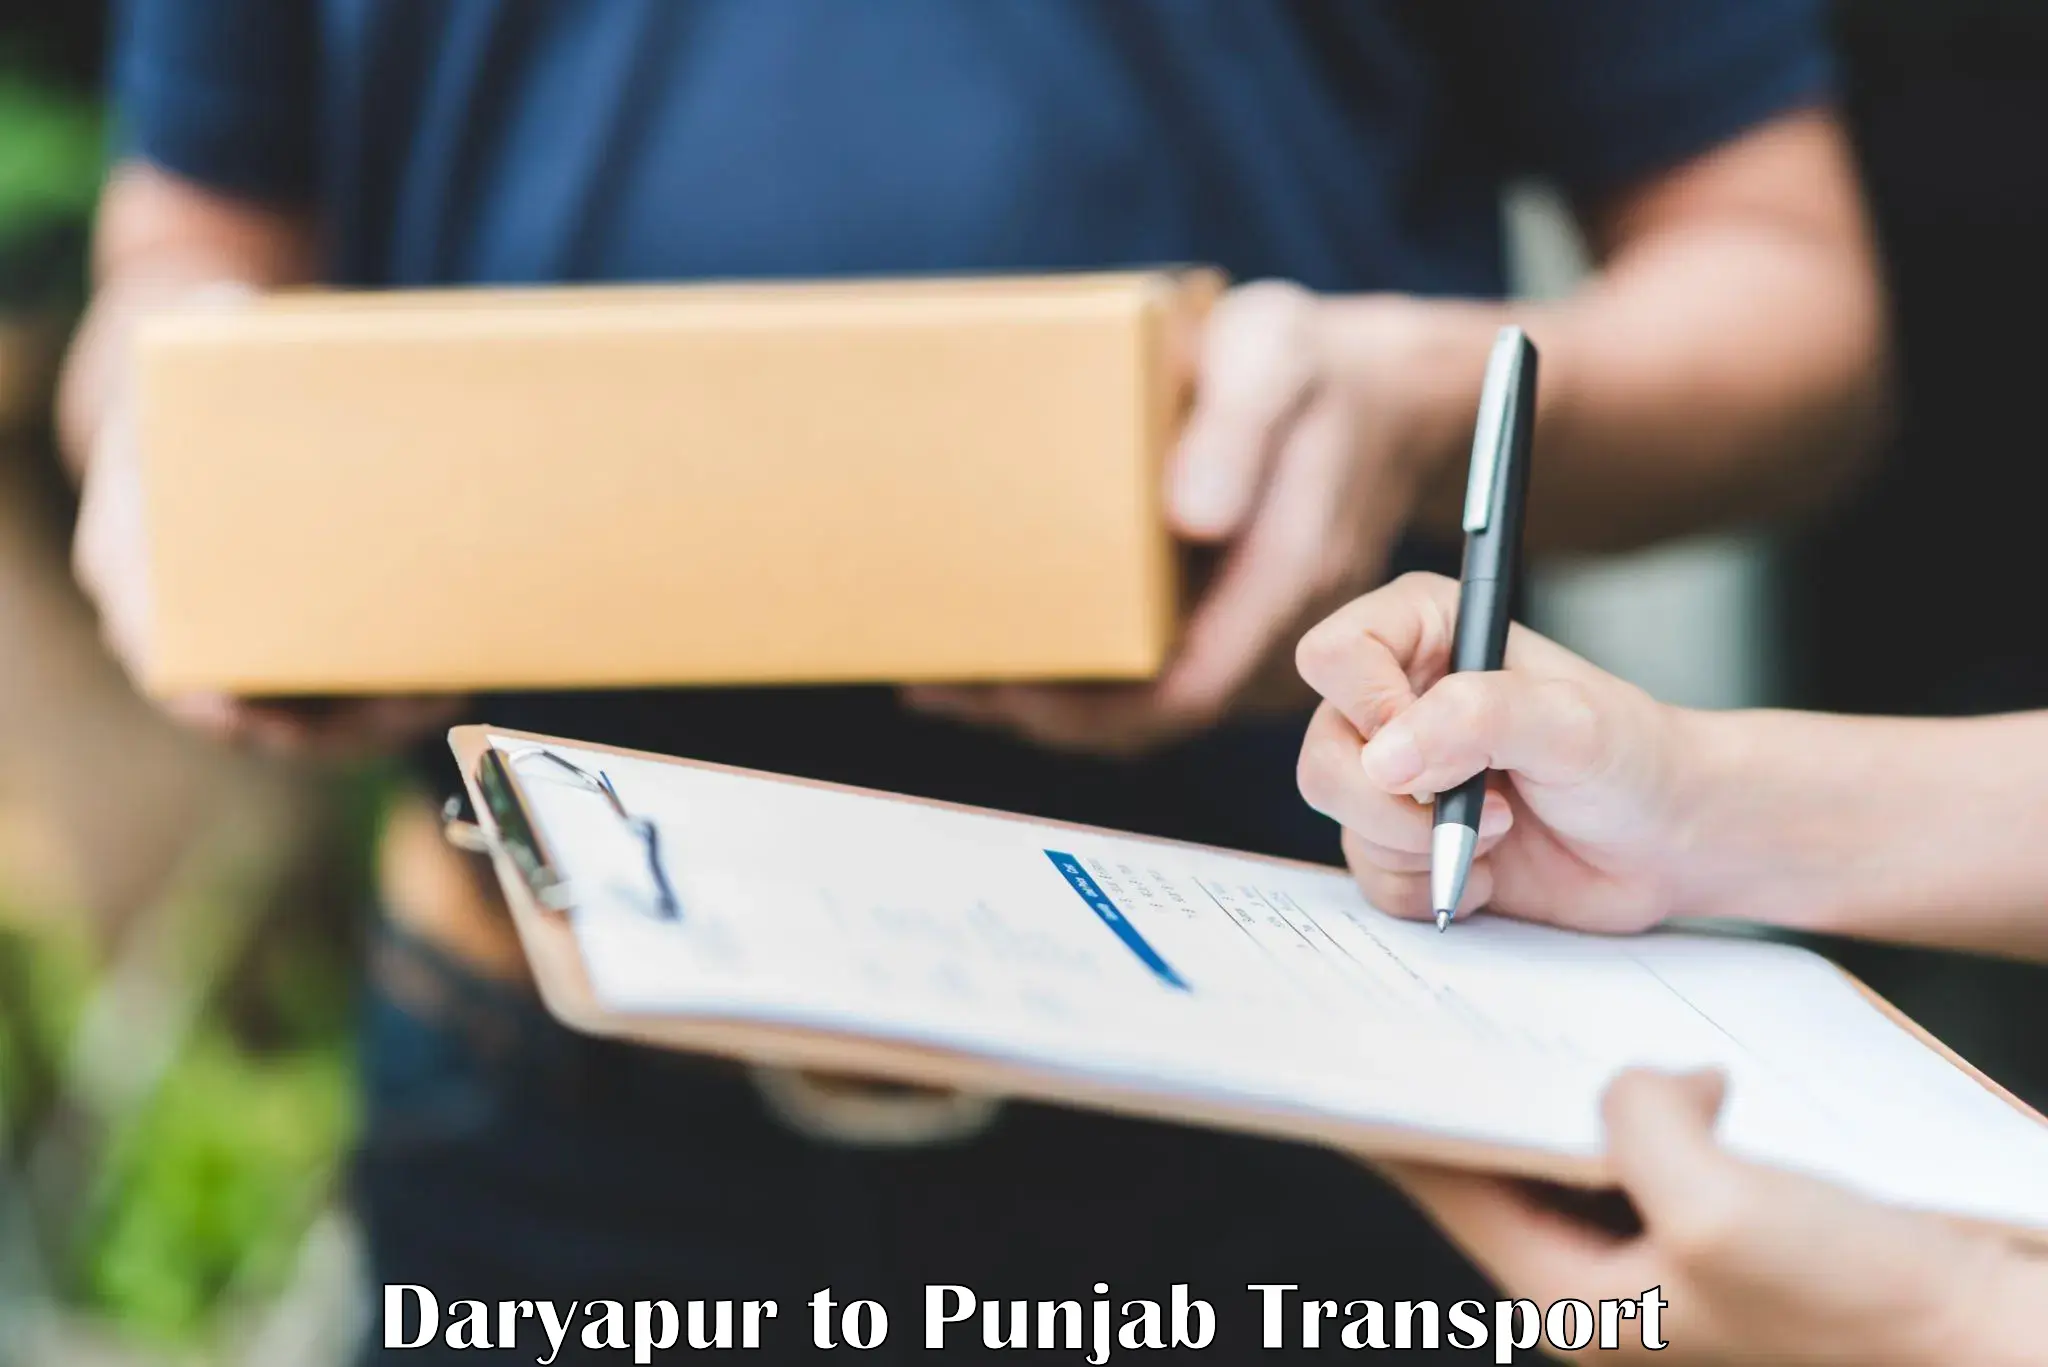 Interstate transport services Daryapur to Sirhind Fatehgarh